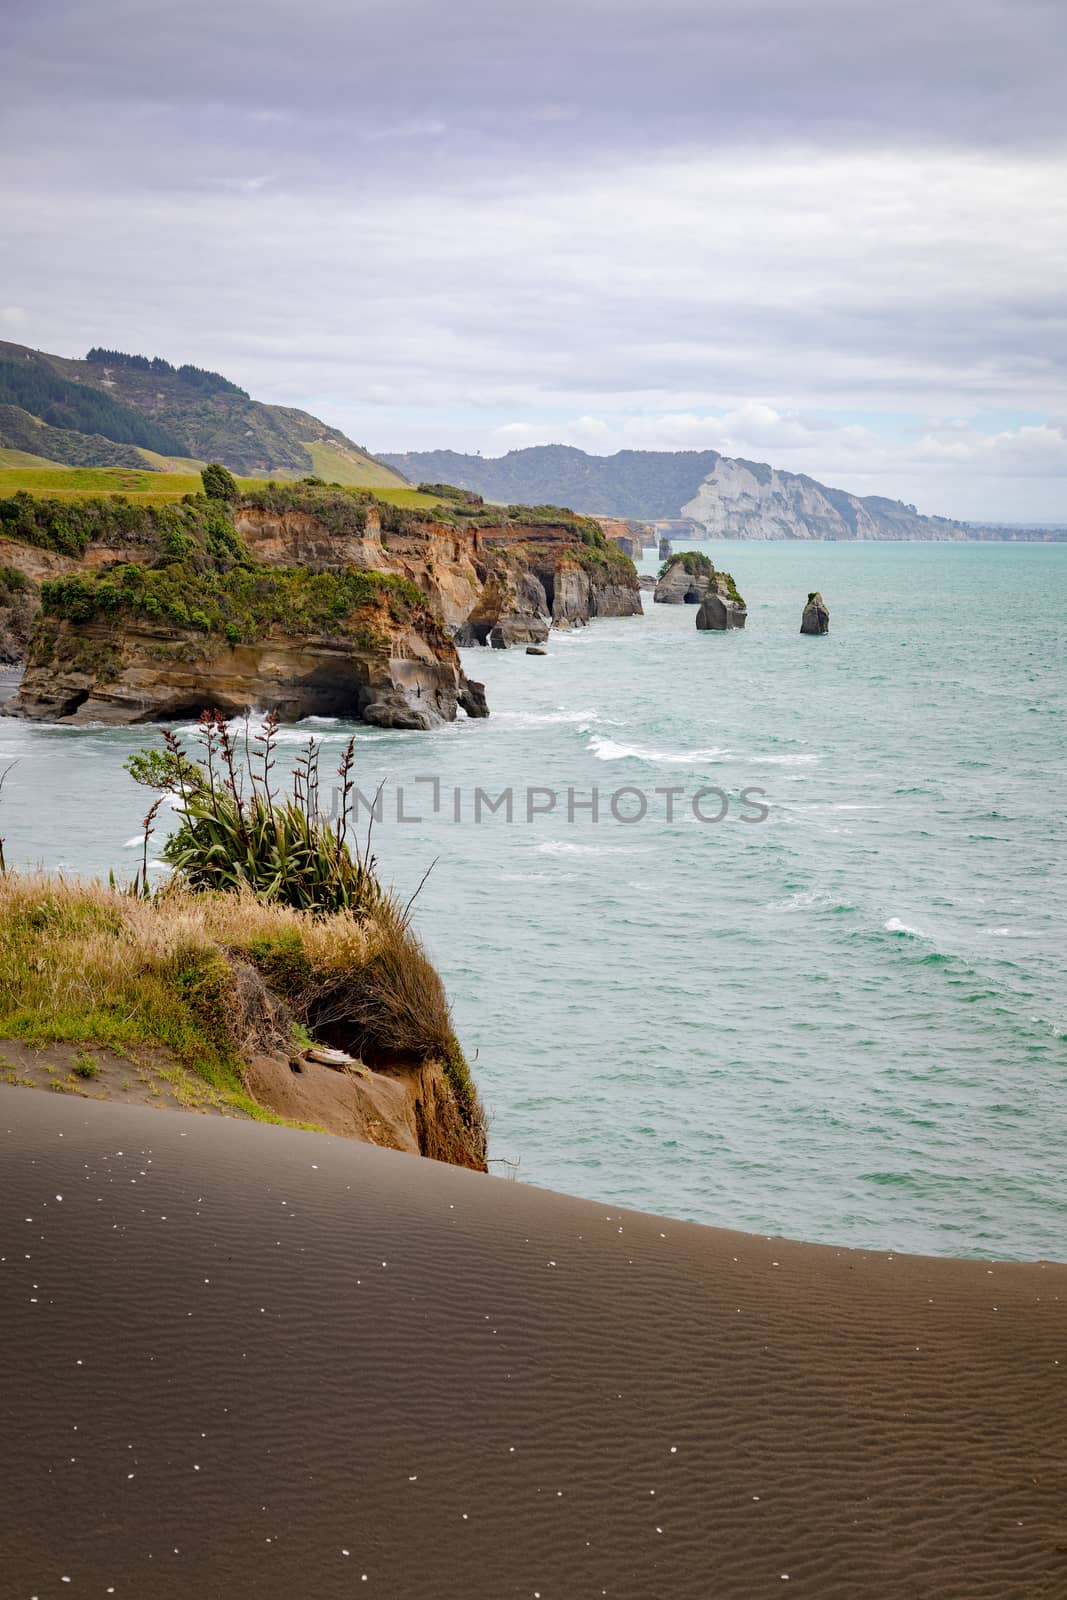 An image of sea shore rocks and mount Taranaki, New Zealand